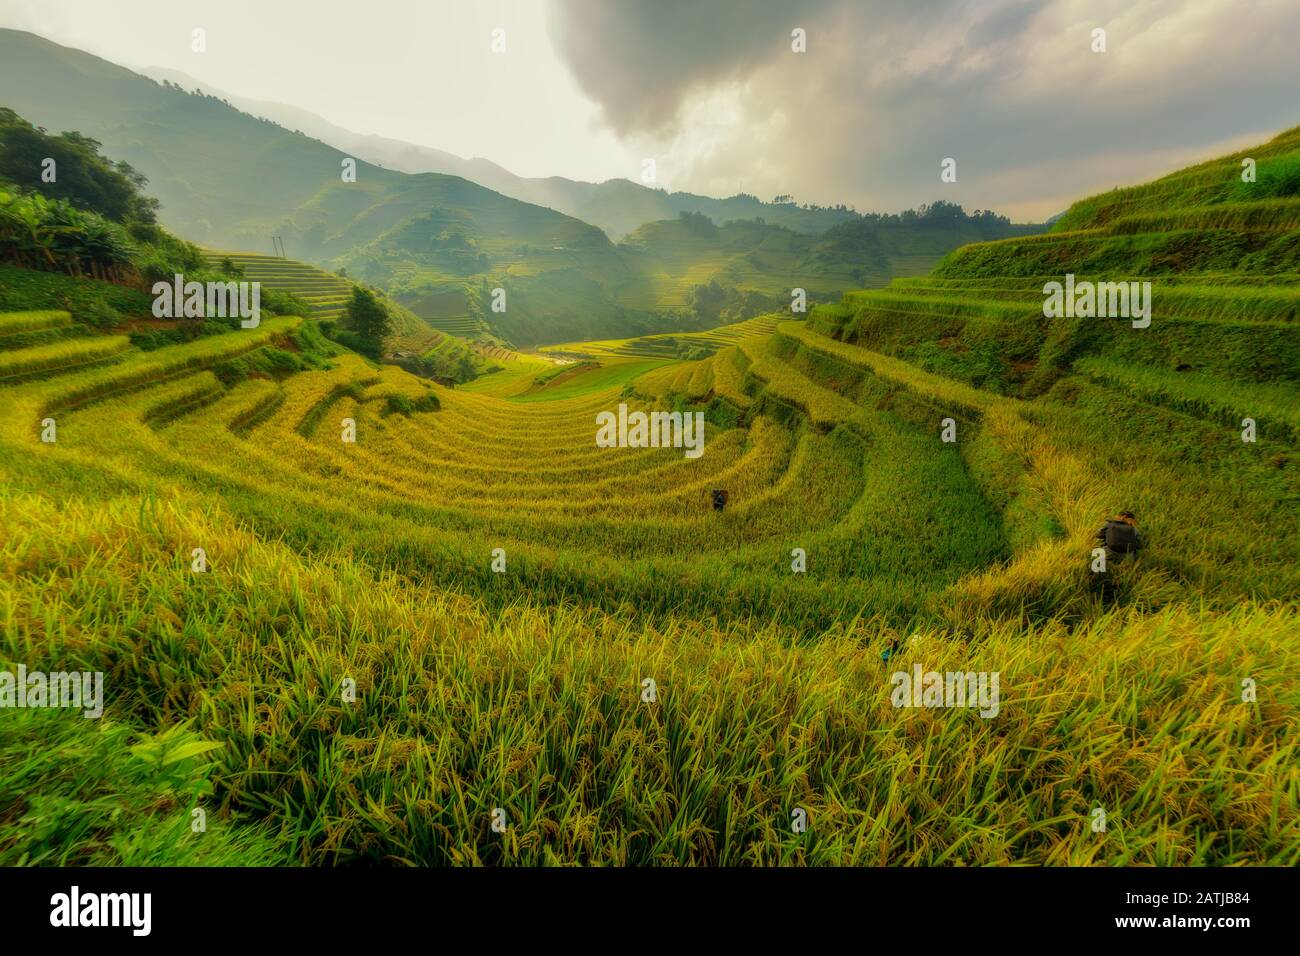 MU Cang Chai Vietnam Le beau champ de riz mitoyen le meilleur point de repère de l'Asie. Banque D'Images